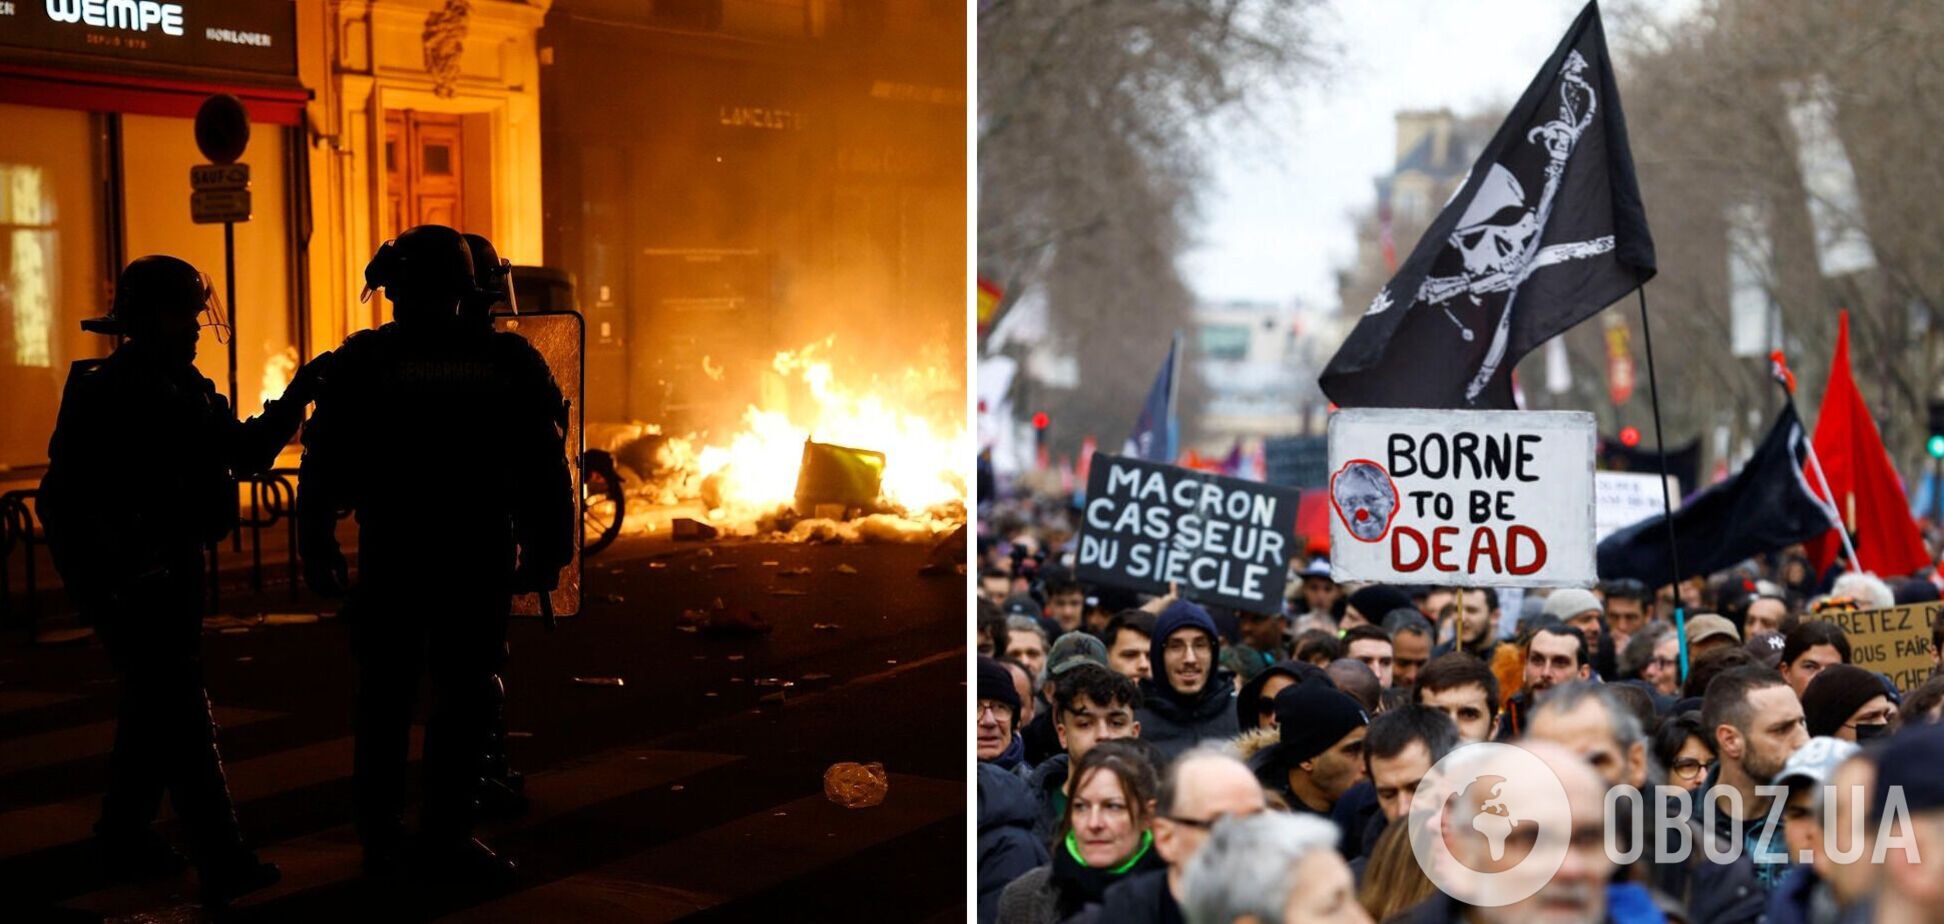 Парламент двічі намагався оголосити вотум недовіри уряду Макрона: у Франції масштабні протести через пенсійну реформу. Відео      